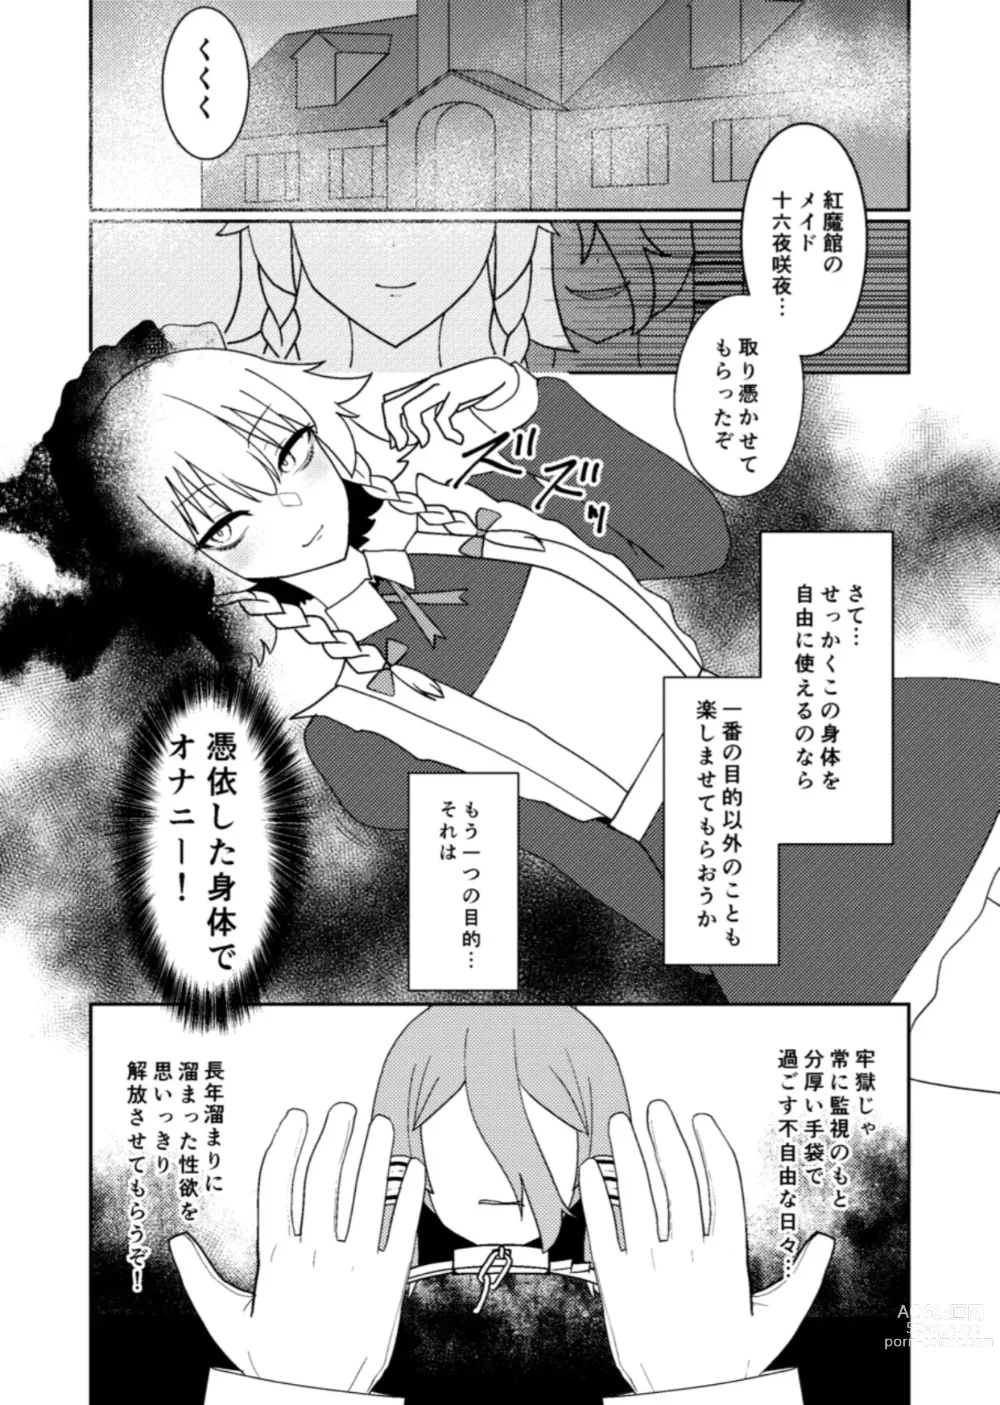 Page 2 of doujinshi Miyadeguchi Mizuchi no Hyoui Onanie Den